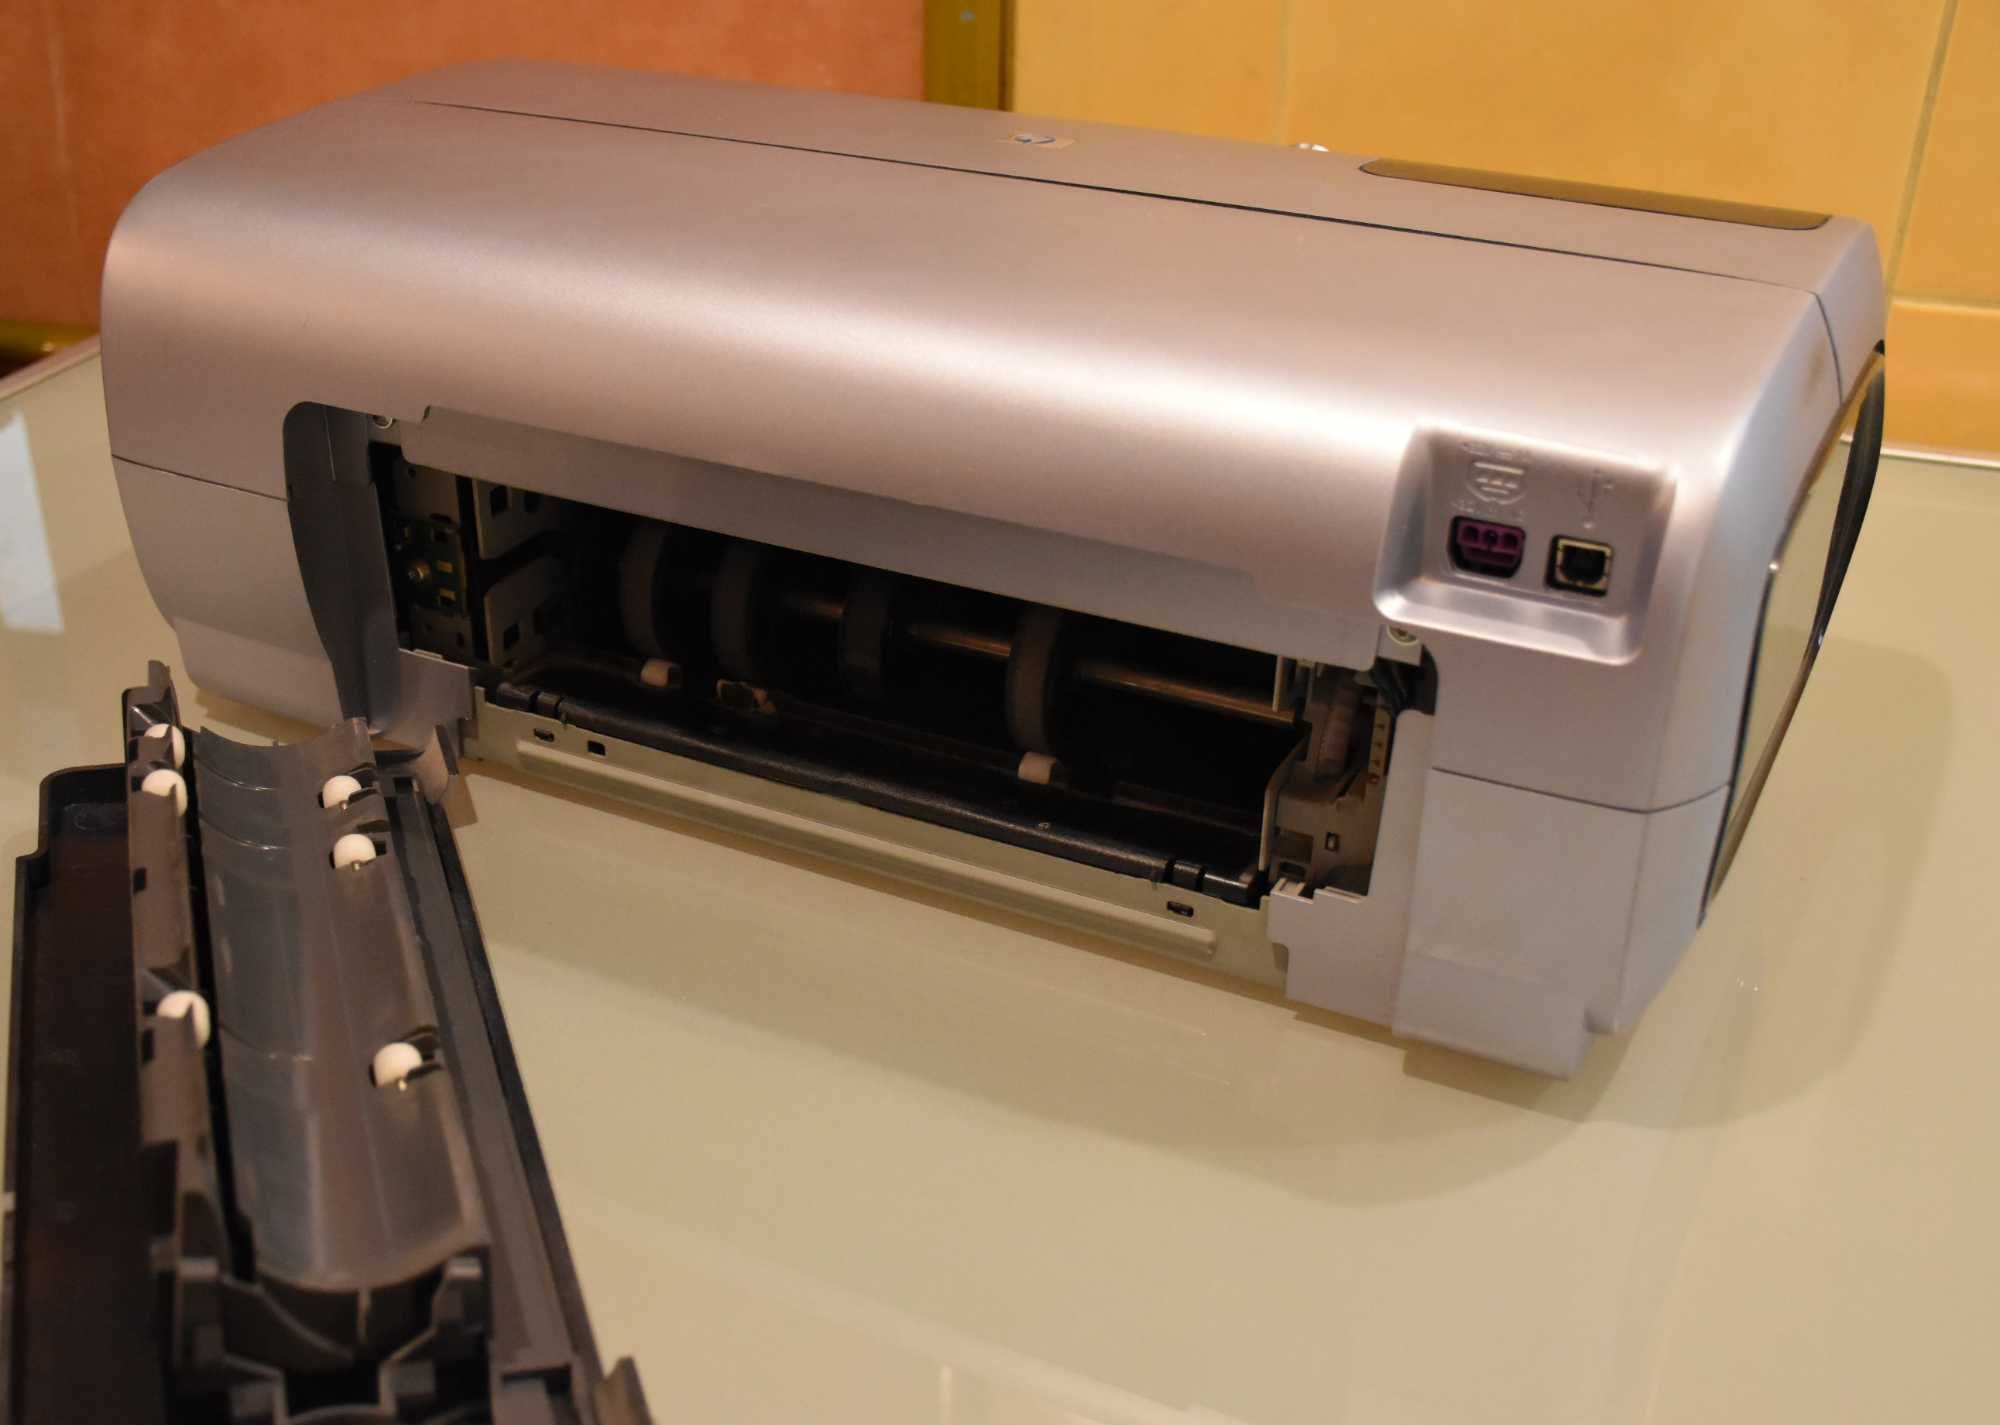 Принтер струйный HP Photosmart 8153 / фотопринтер / для фотографий